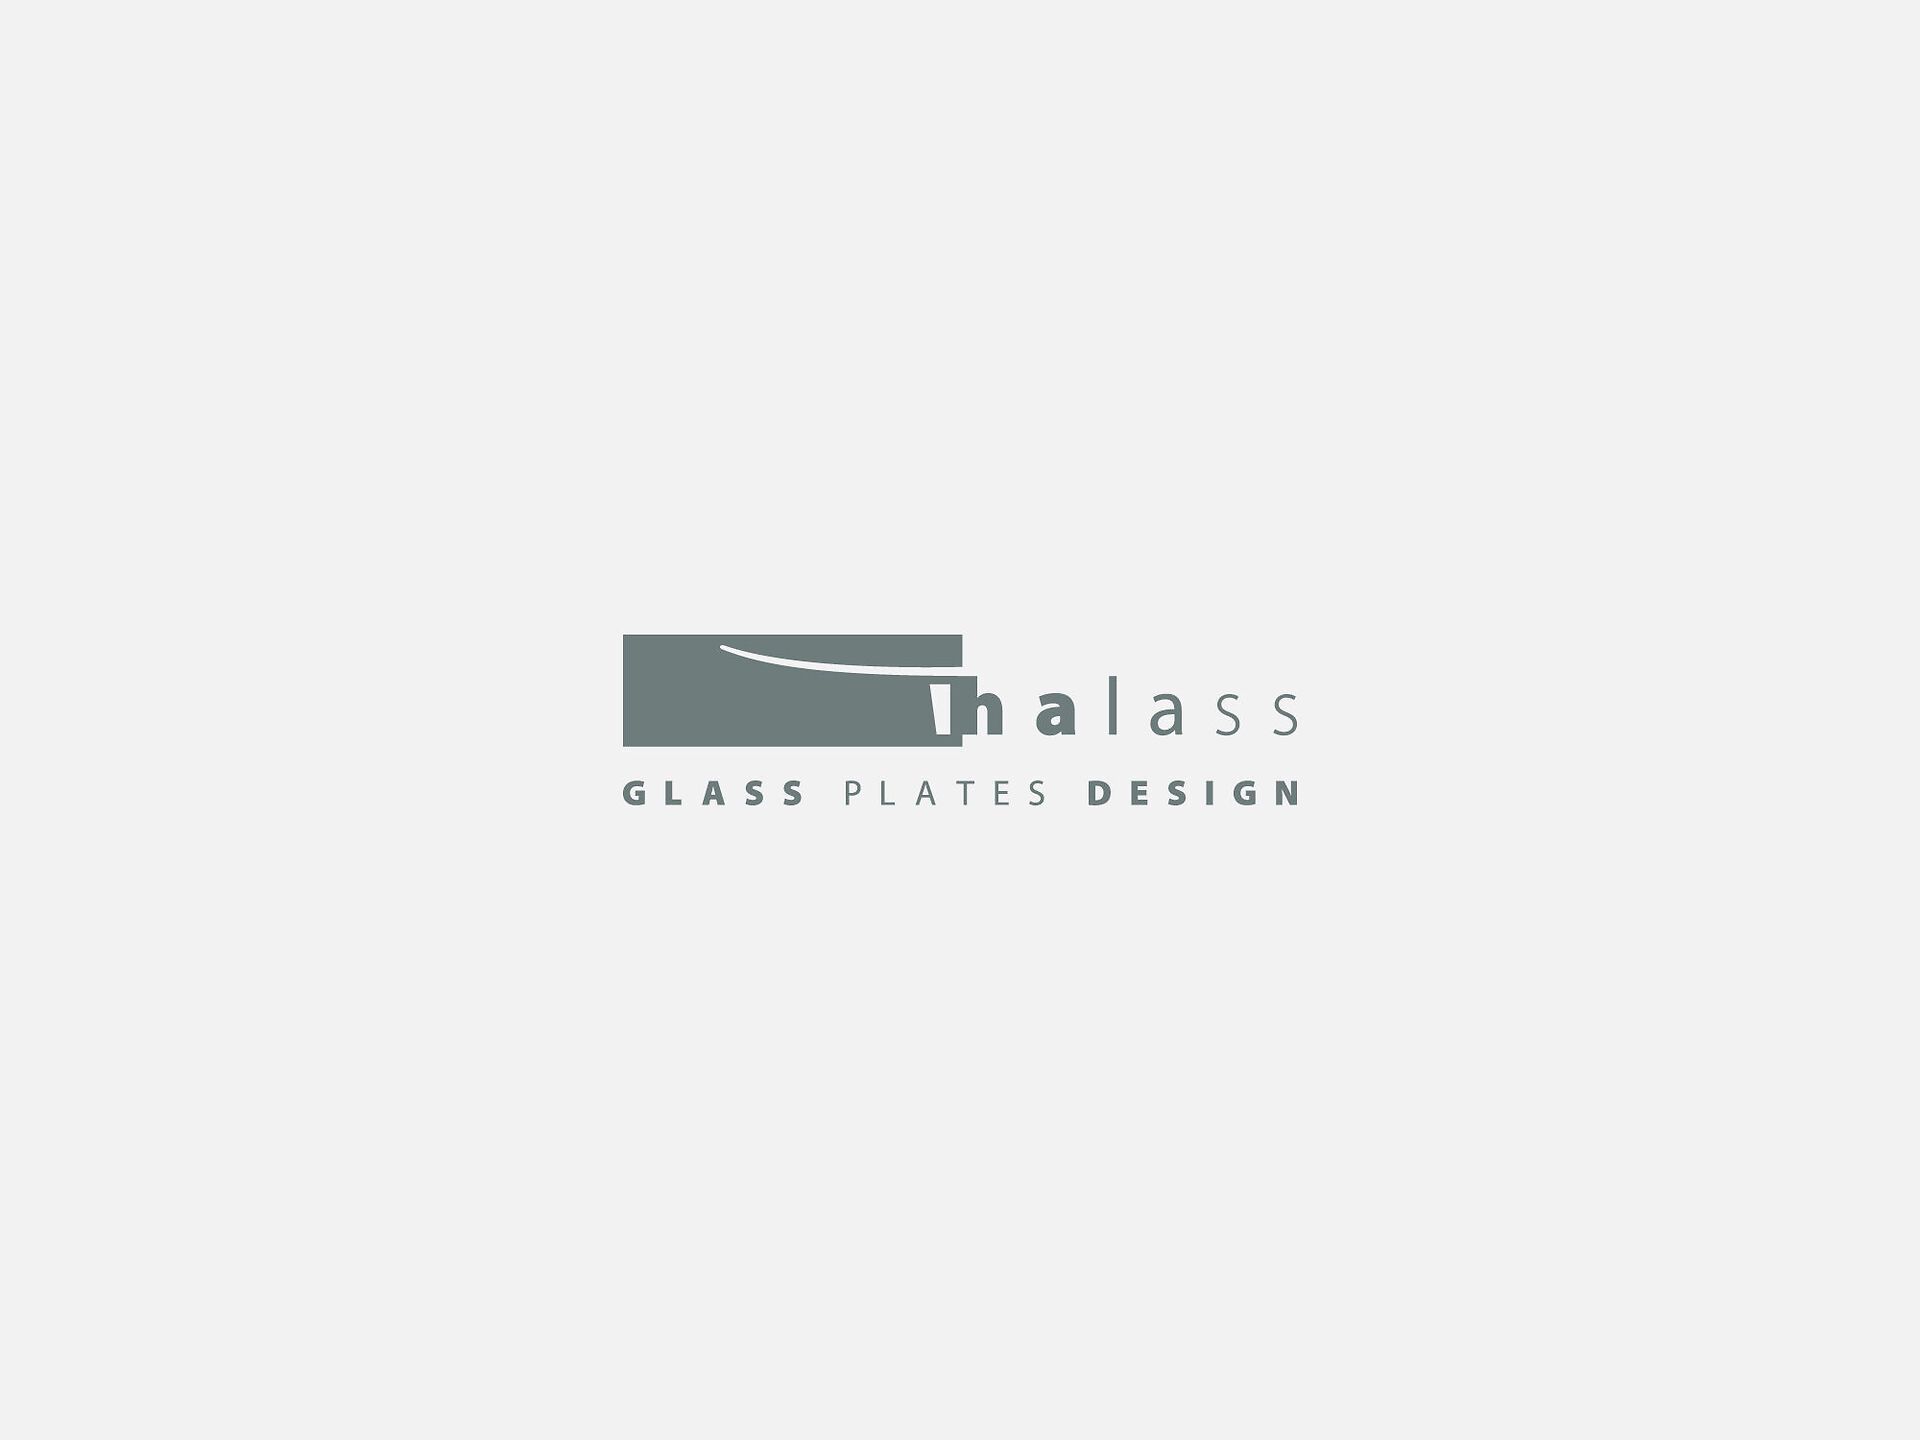 Logo Thalass a colori